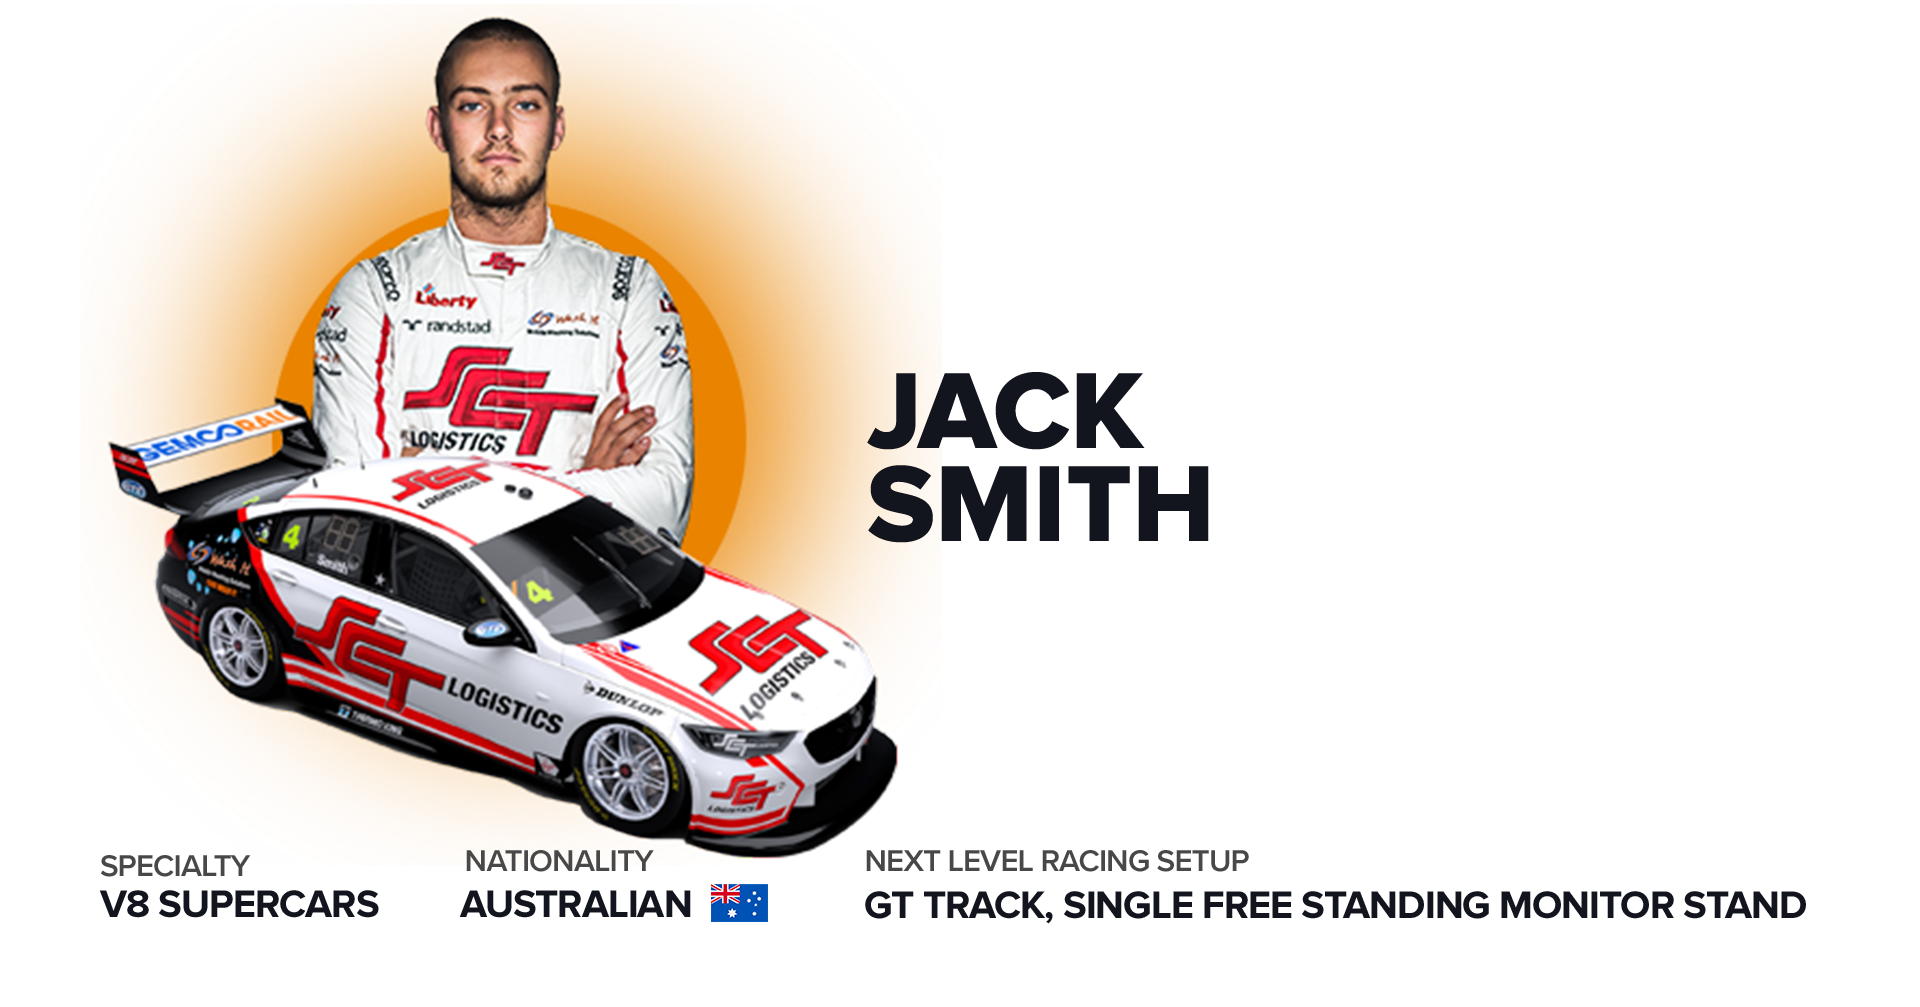 Jack Smith Racing